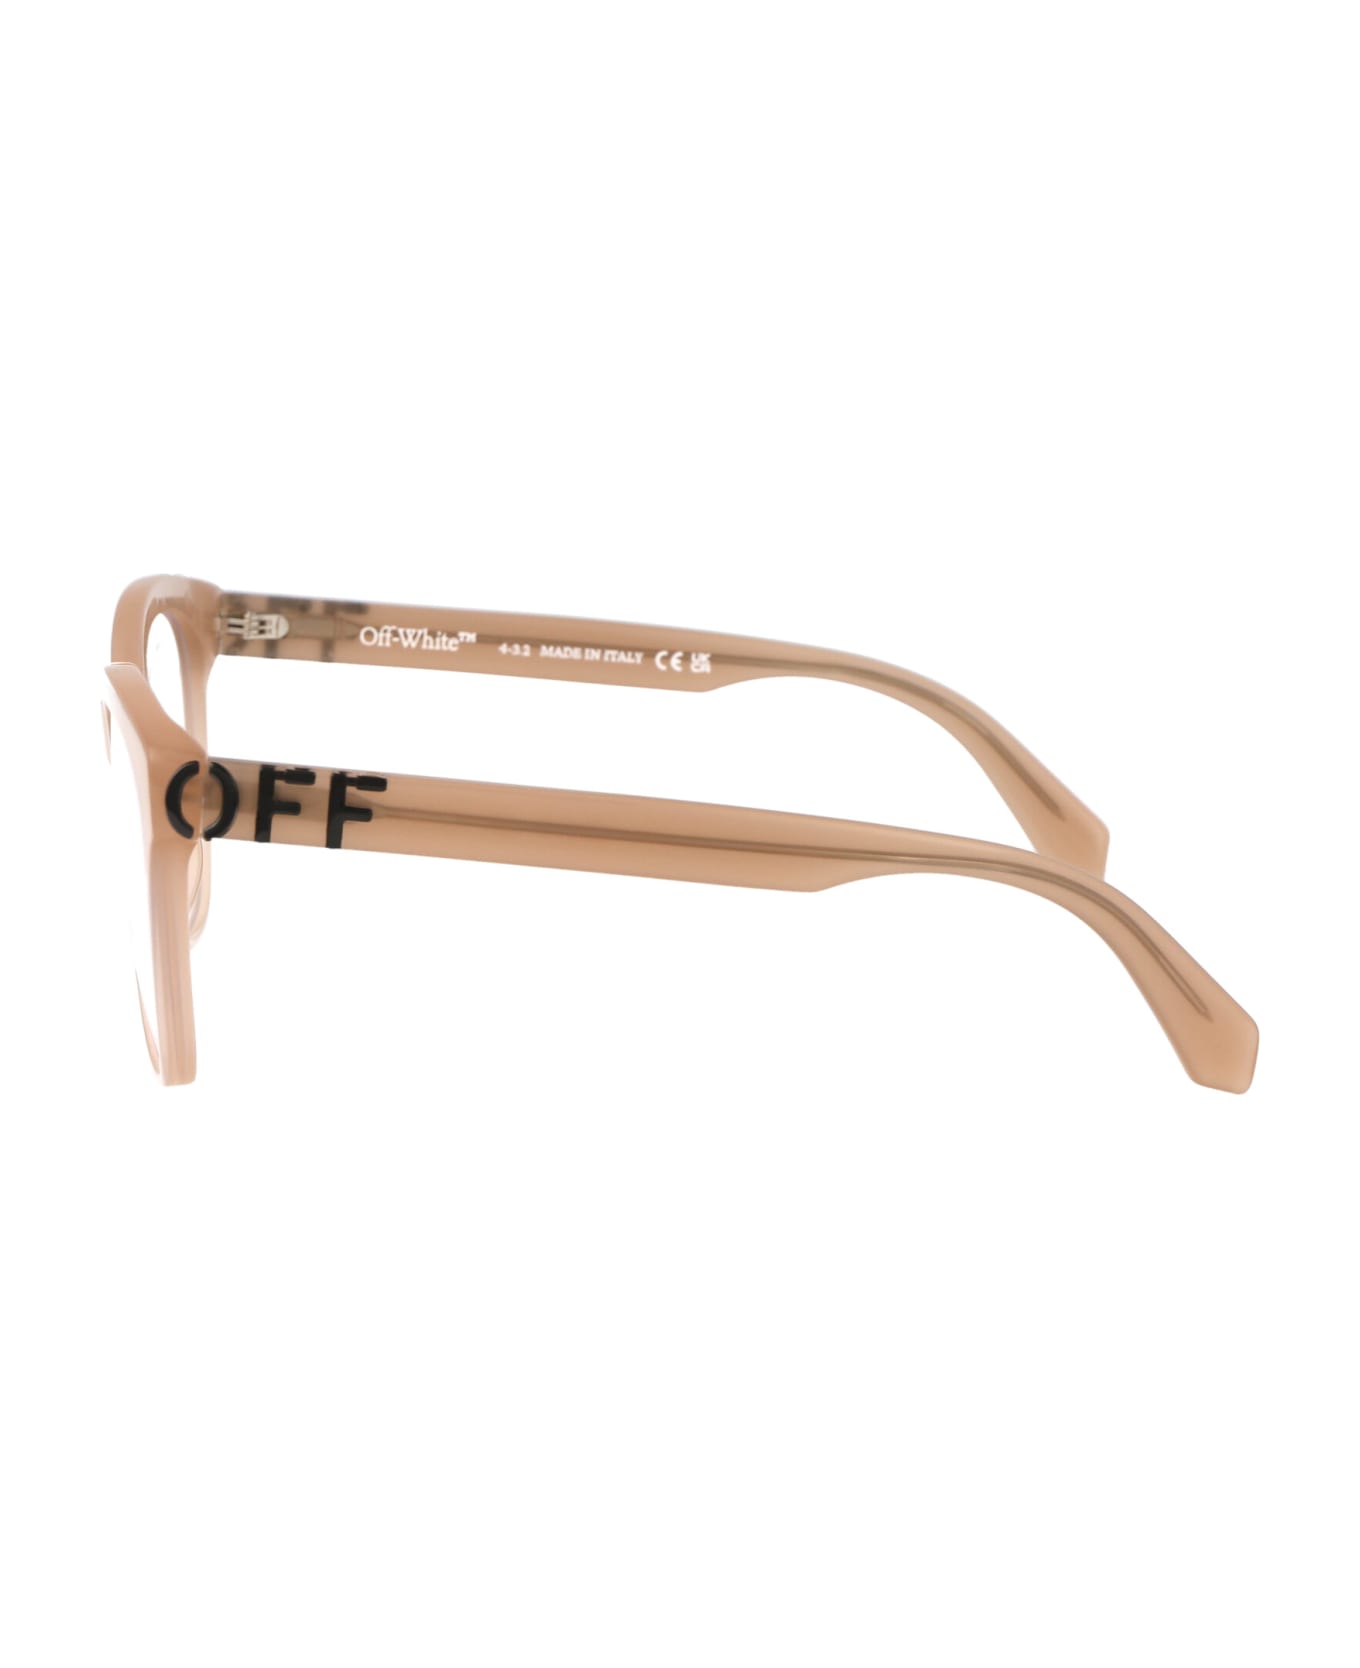 Off-White Optical Style 69 Glasses - 6100 BEIGE  アイウェア